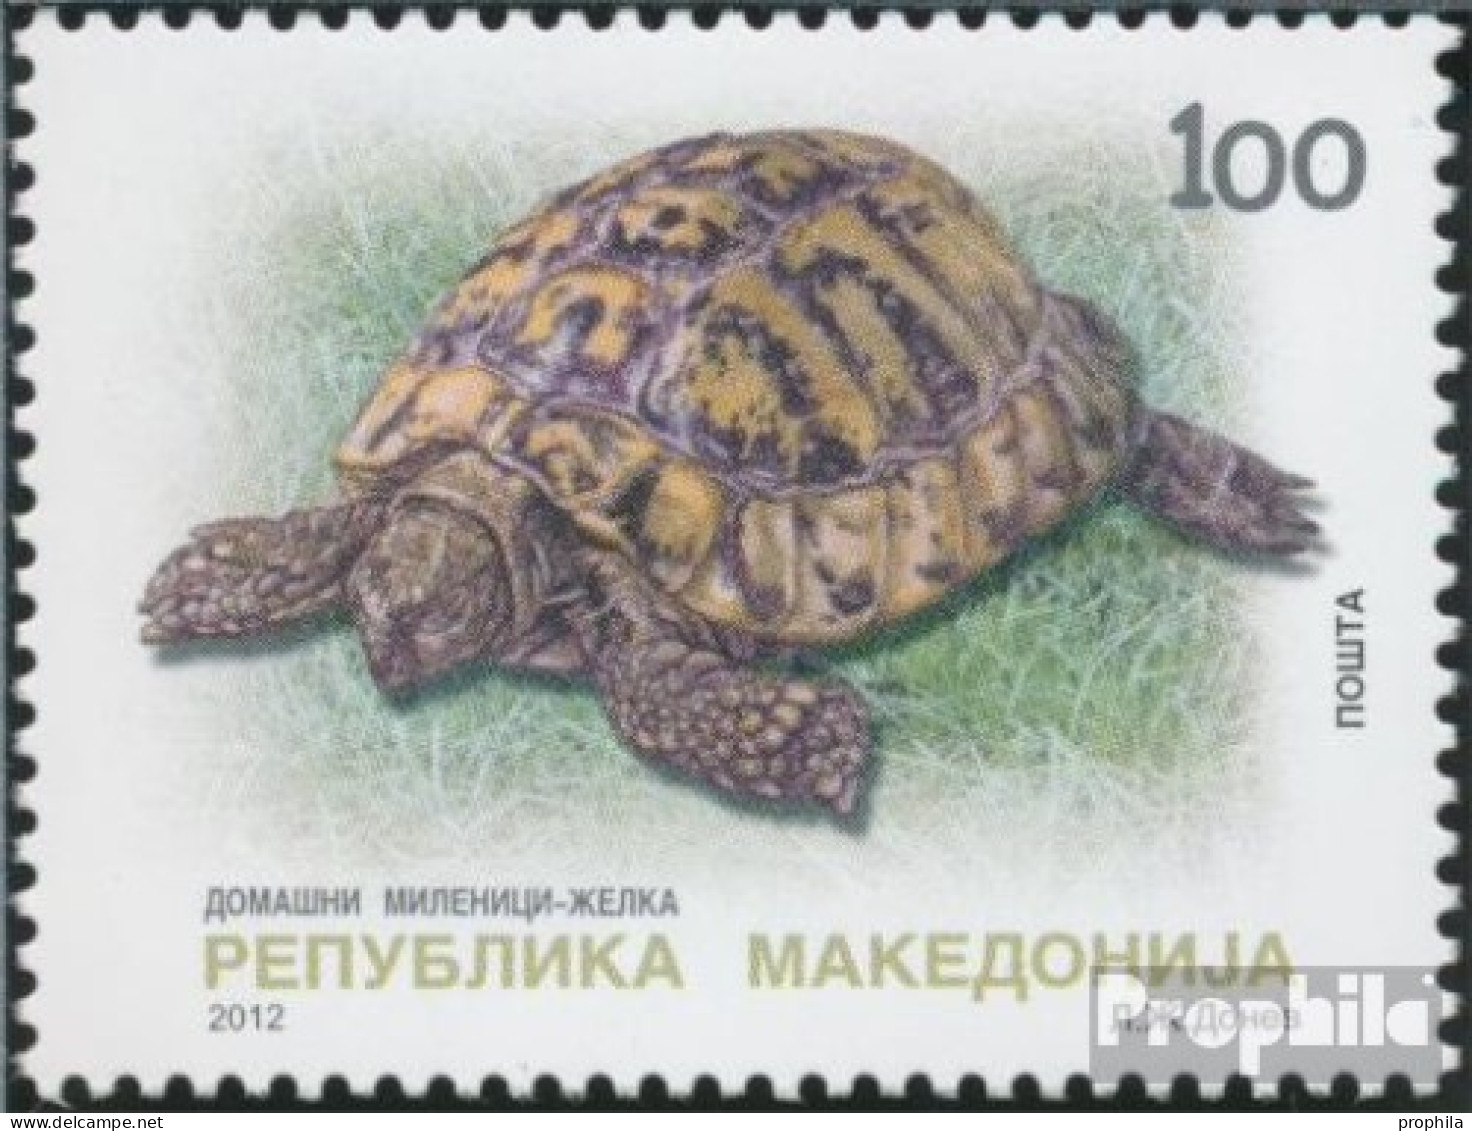 Makedonien 621 (kompl.Ausg.) Postfrisch 2012 Schildkröte - Macedonie